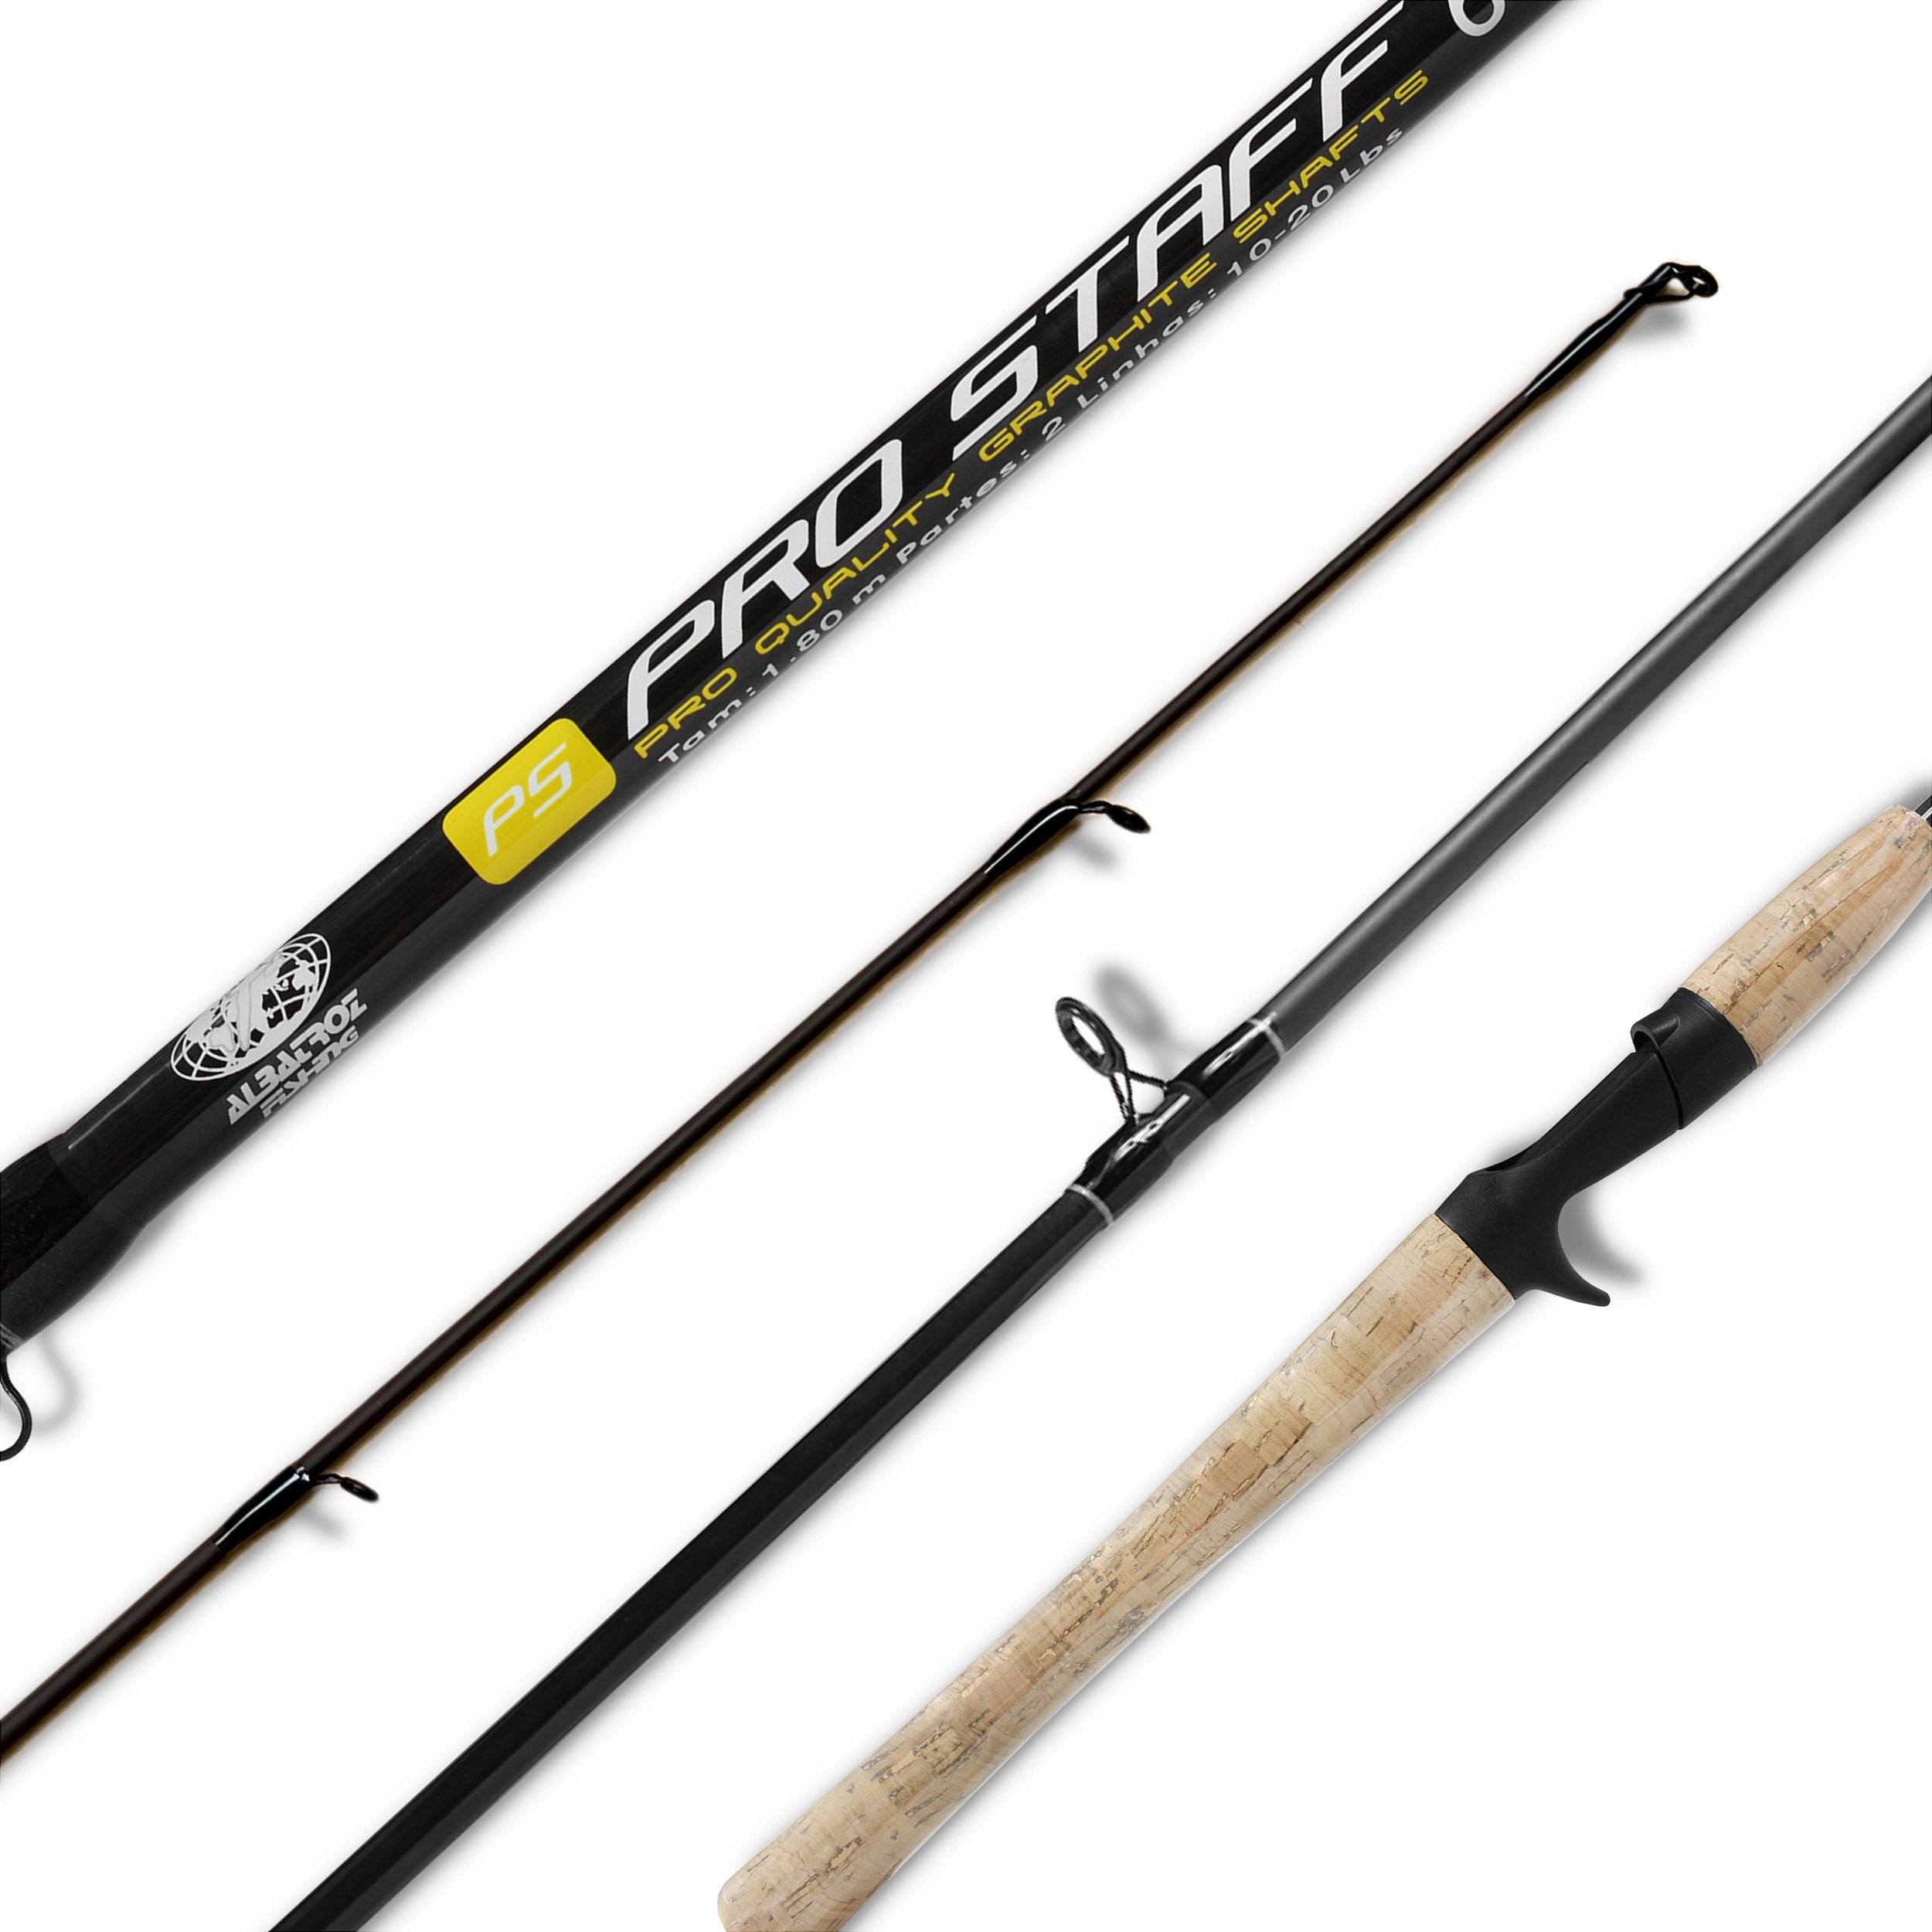 Kit Pesca Leve Vara Pro Staff 1,80m 20lbs + Carretilha Bait K-6000 6r -  Solfish - Qualidade Para o Seu Esporte!, kit de pesca